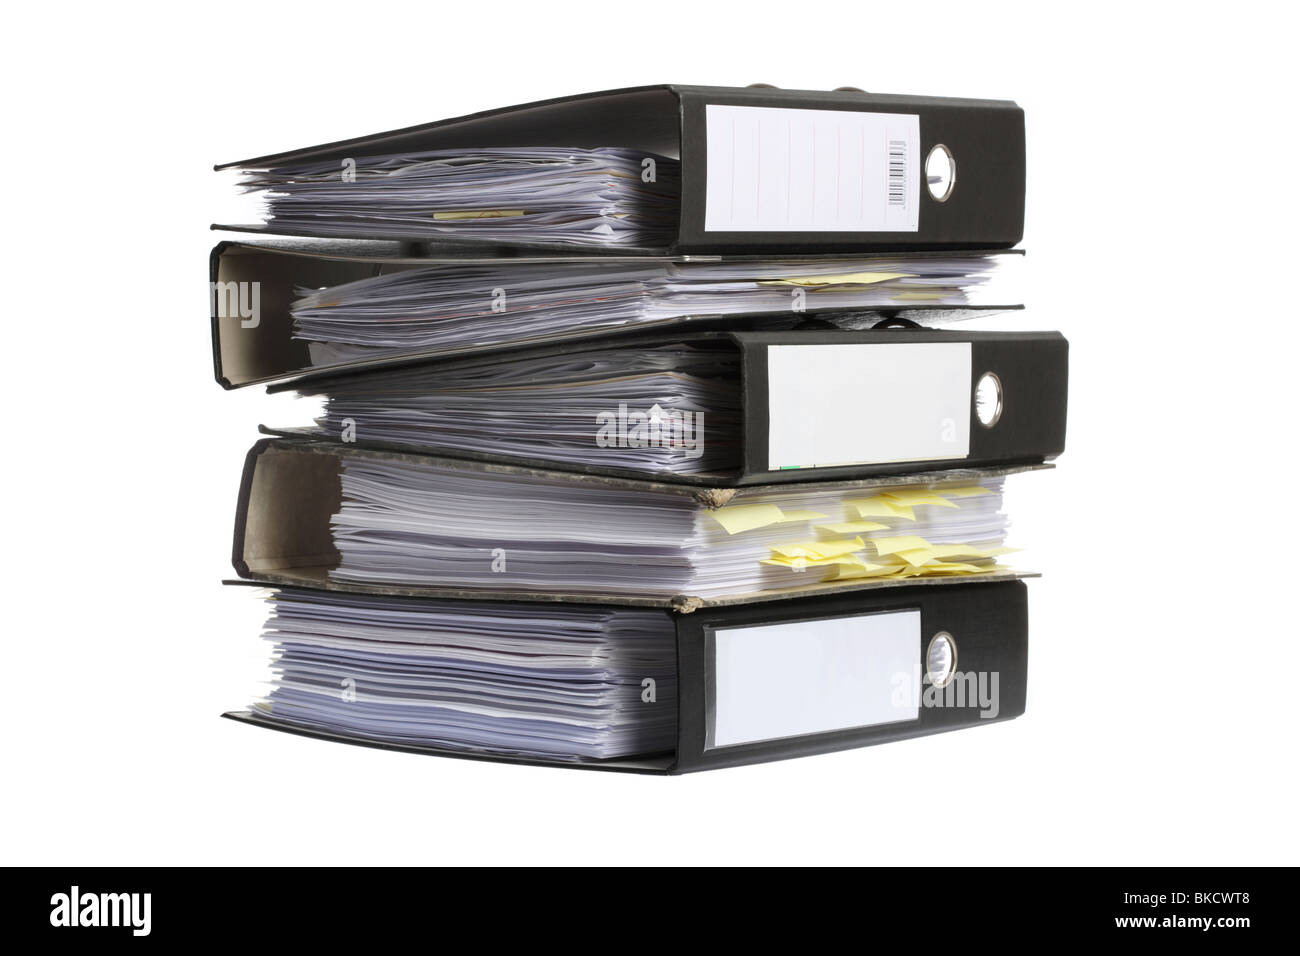 File di documento, la casella file, Forniture per uffici, documenti nella cartella di archiviazione. Foto Stock